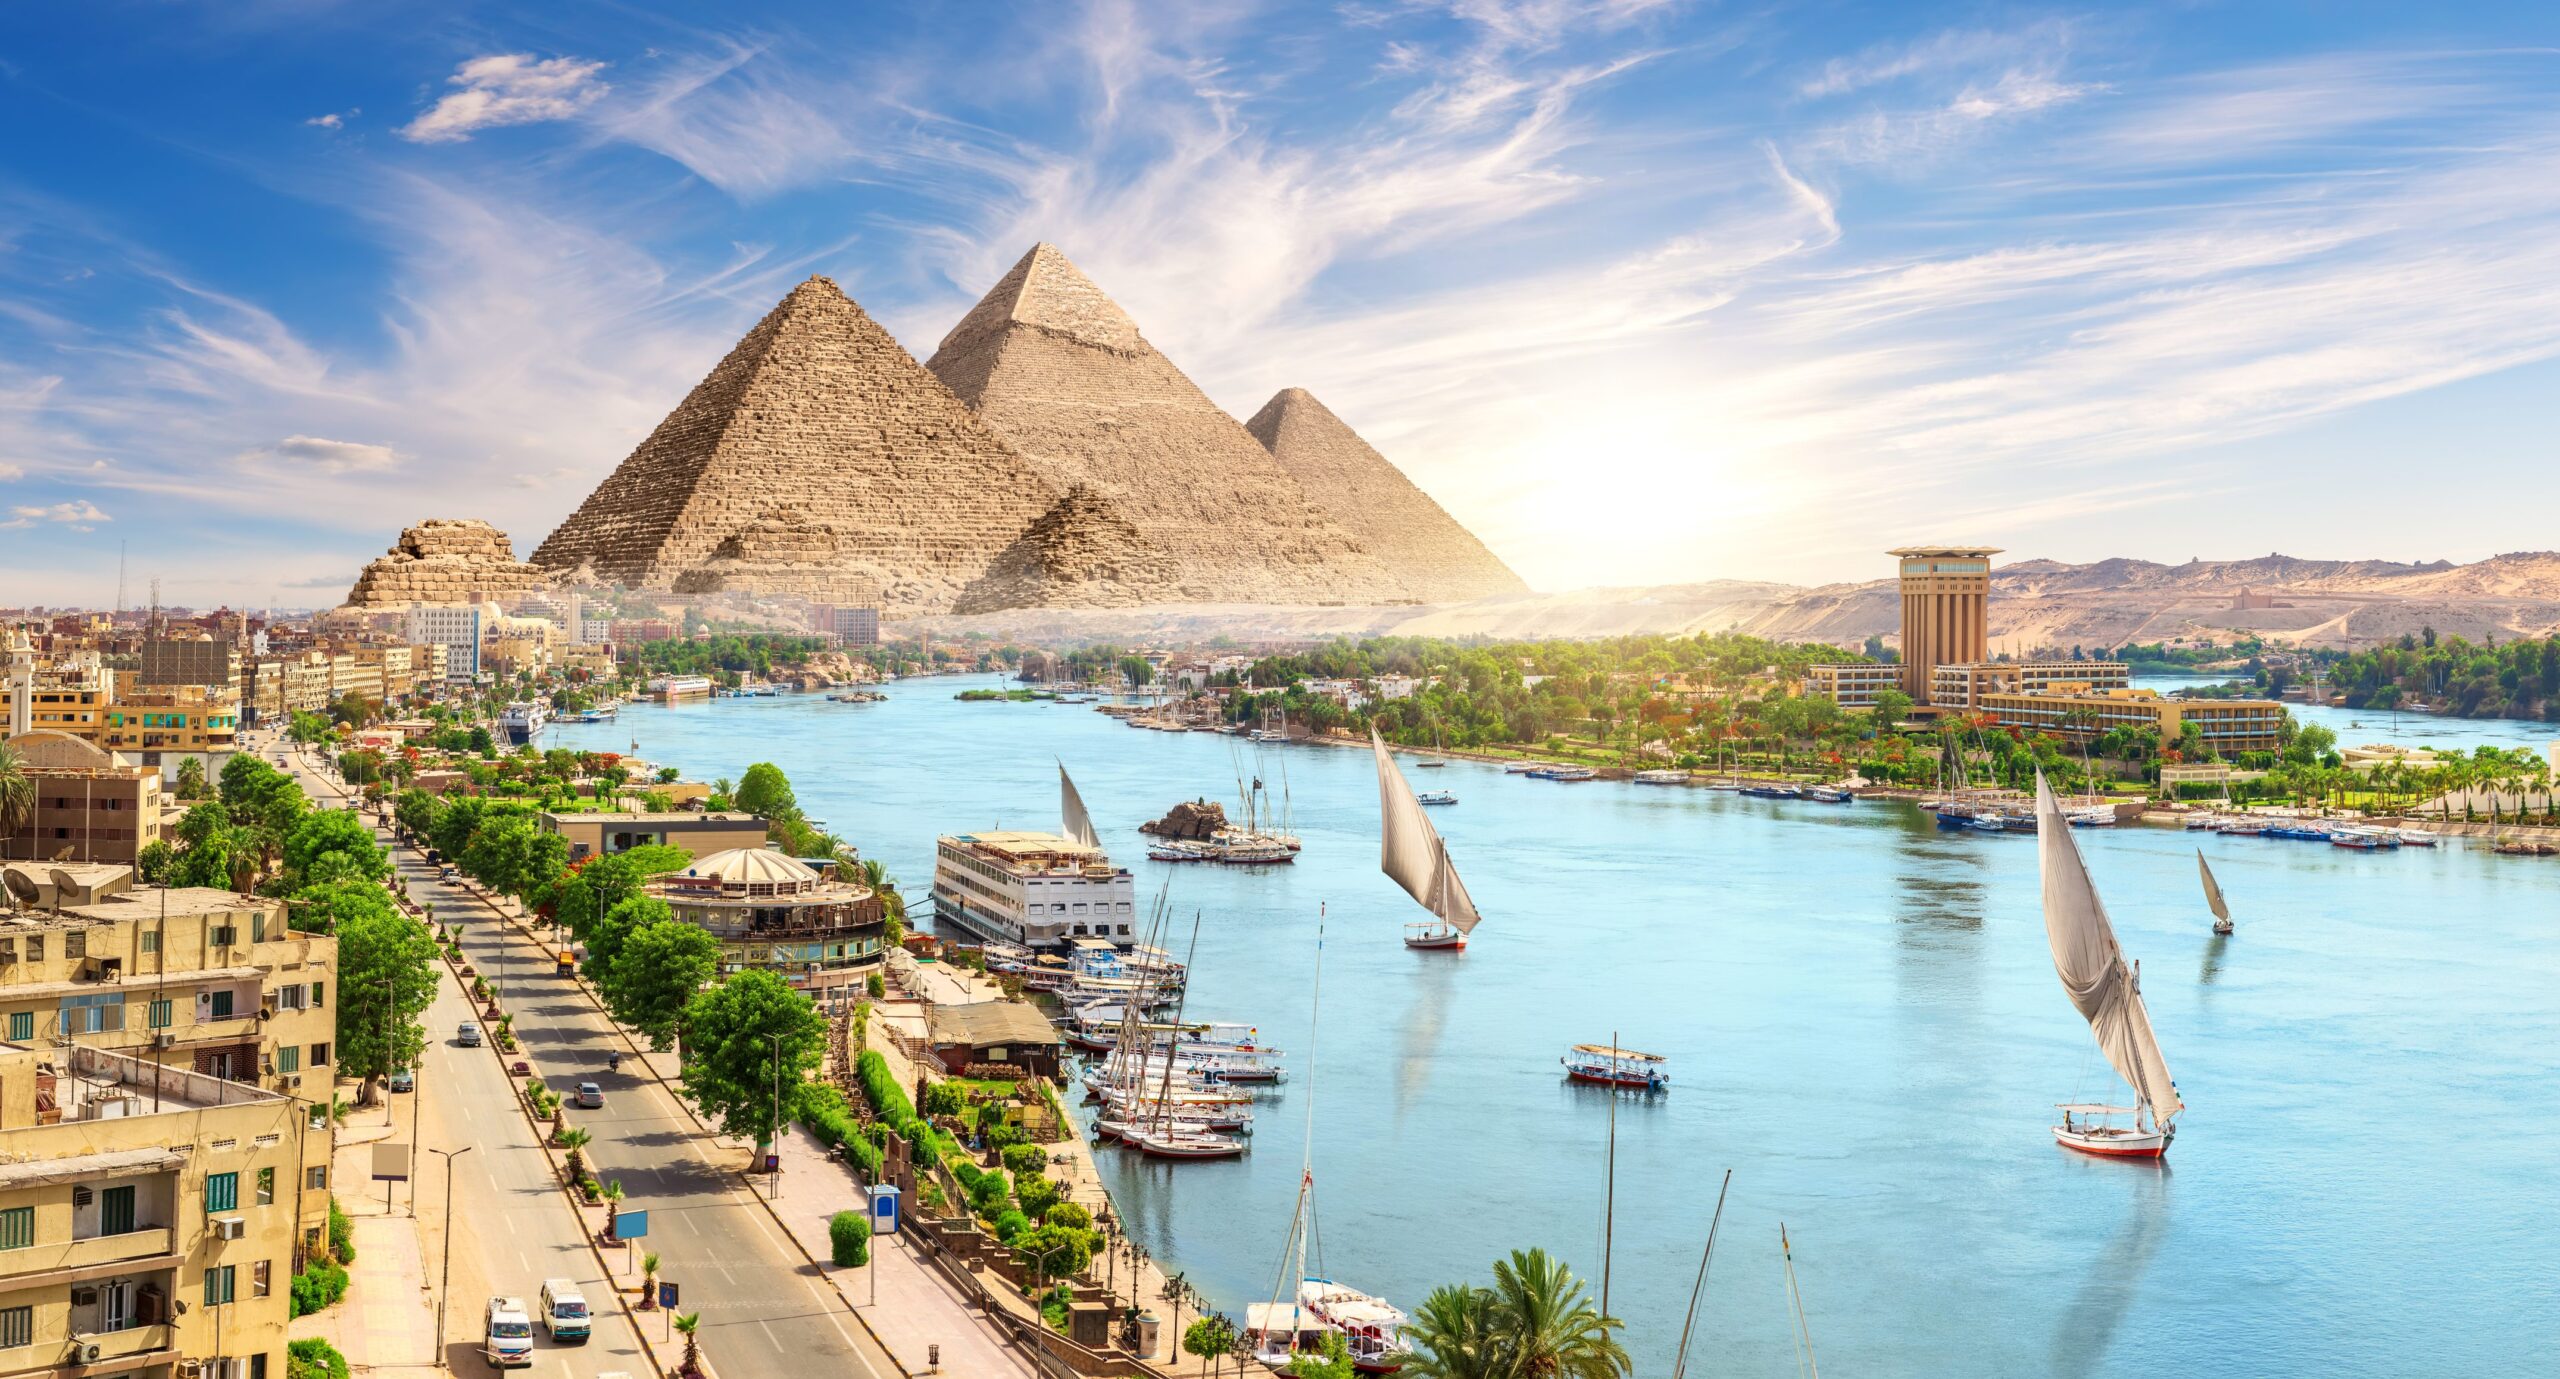 کشور مصر یکی از قدیمی ترین کشورهای جهان است